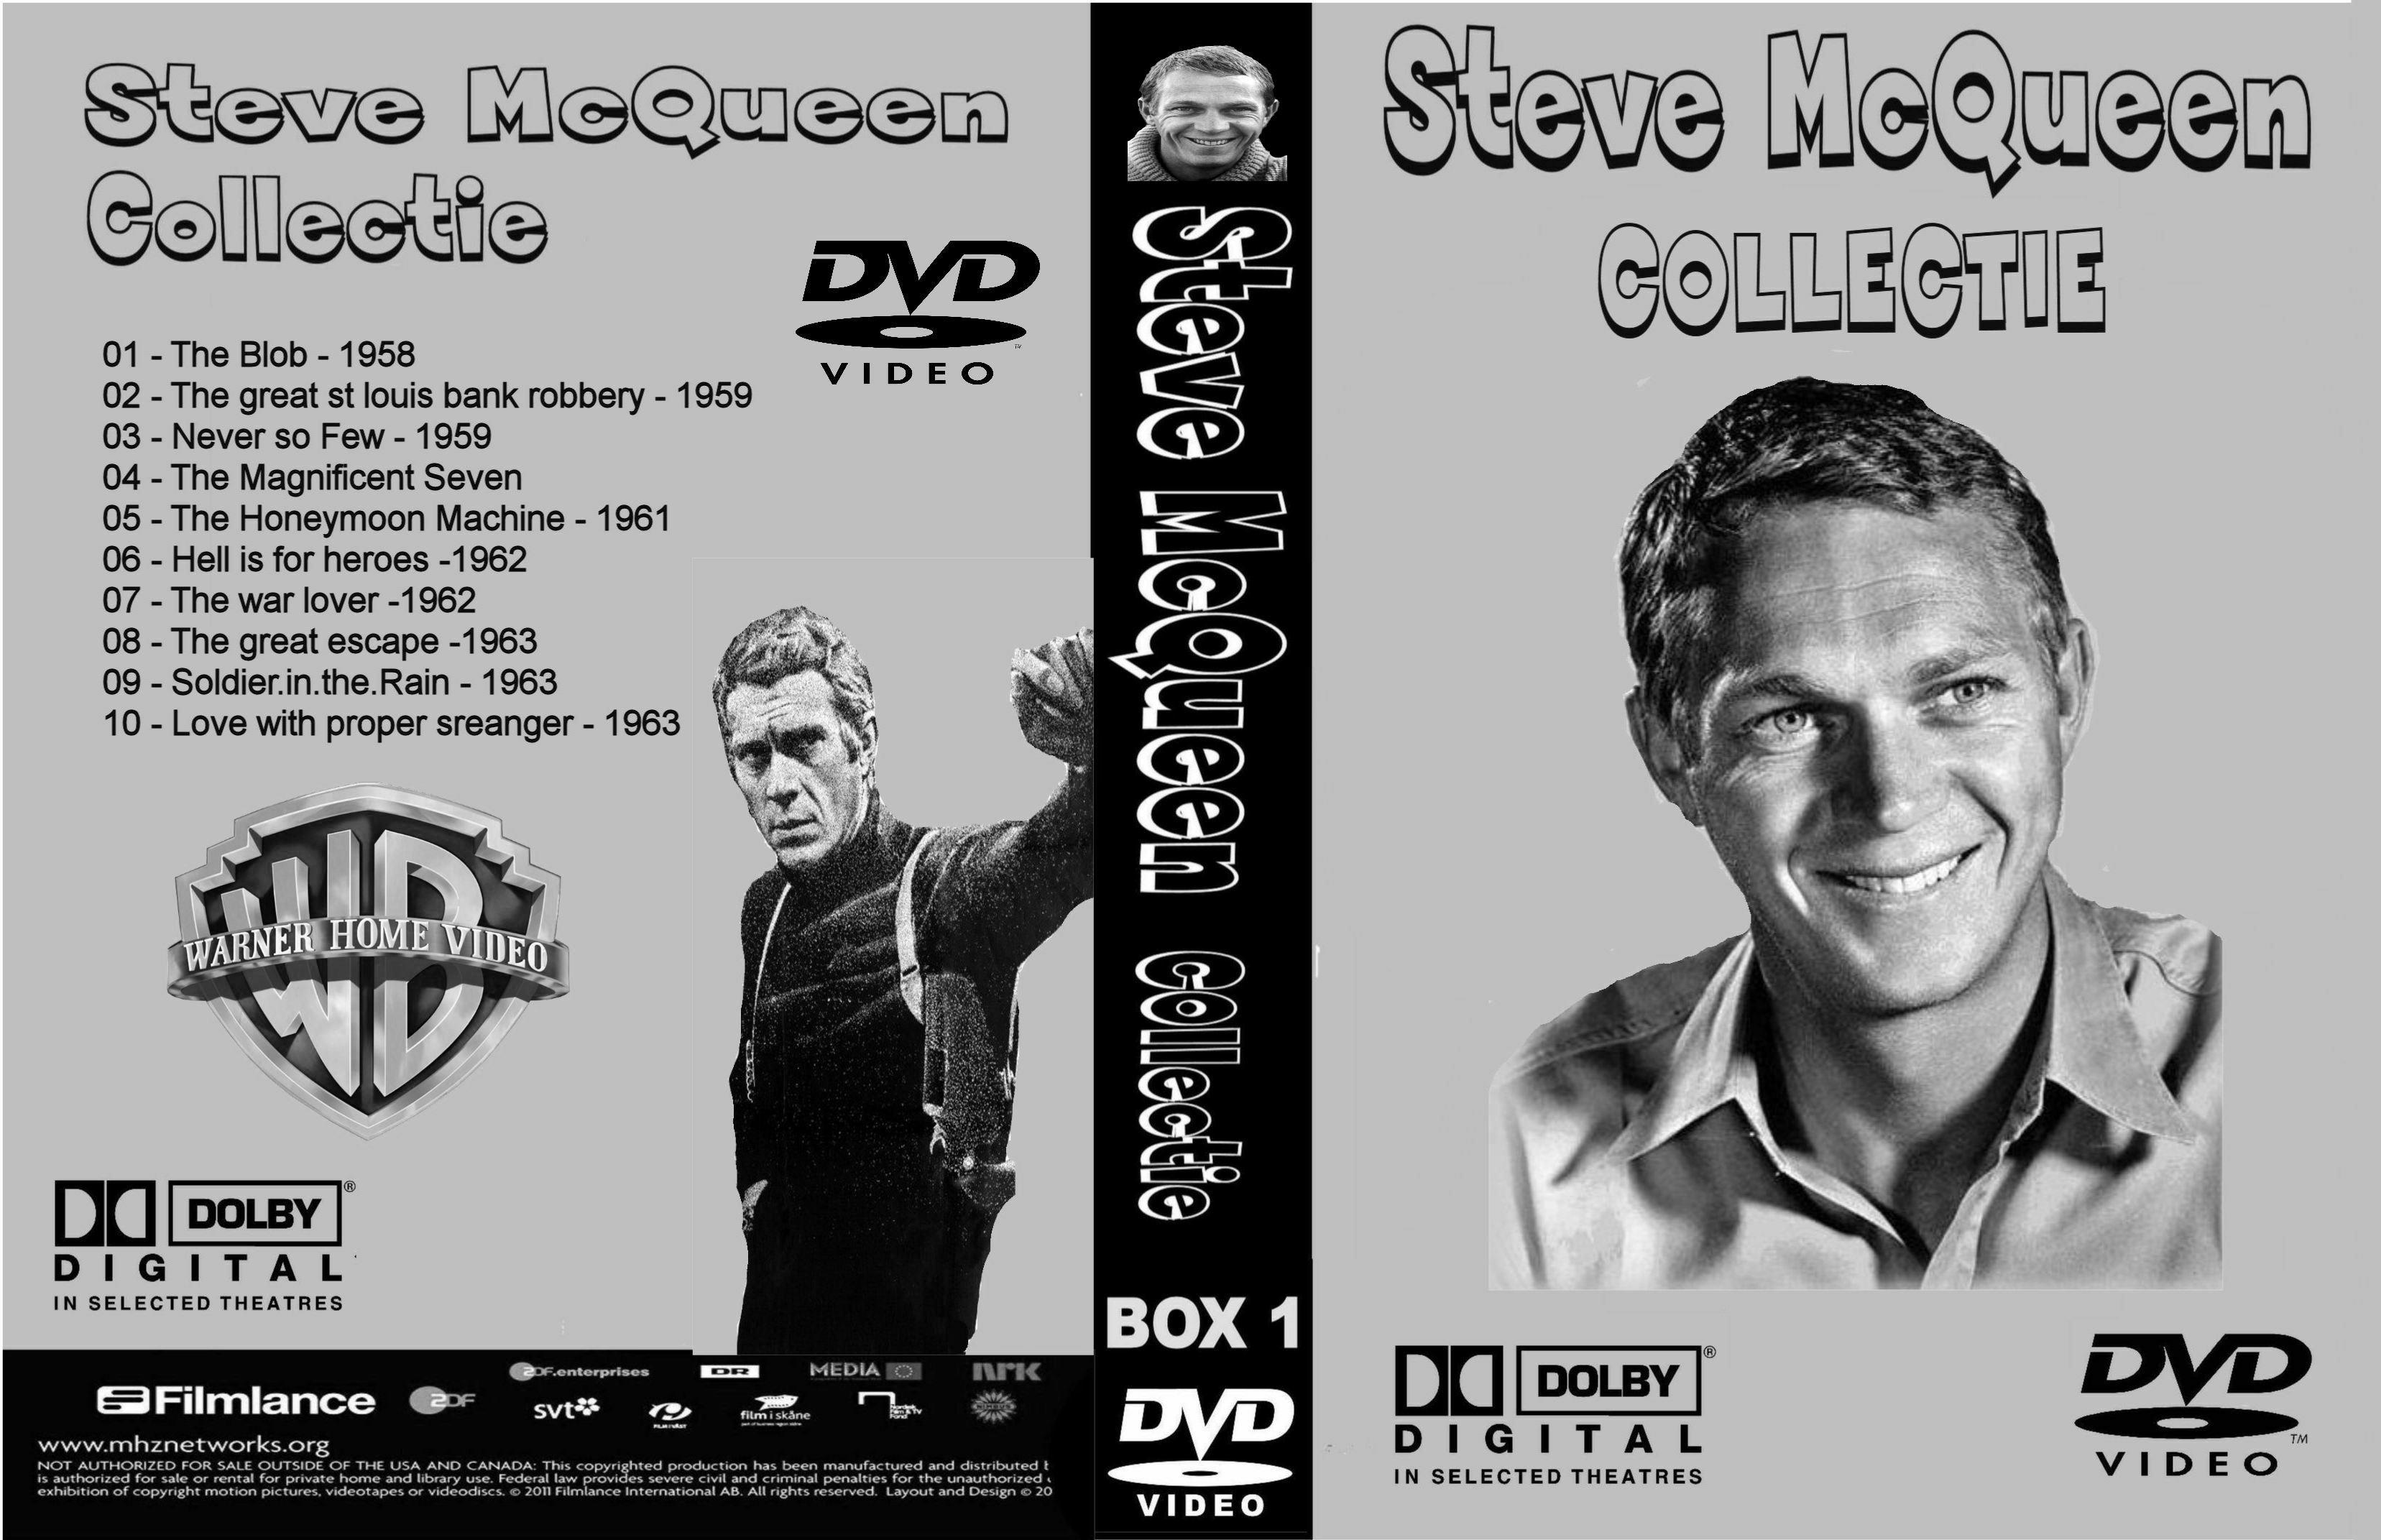 Steve McQueen Collectiie Box 1 DvD 1 van 10